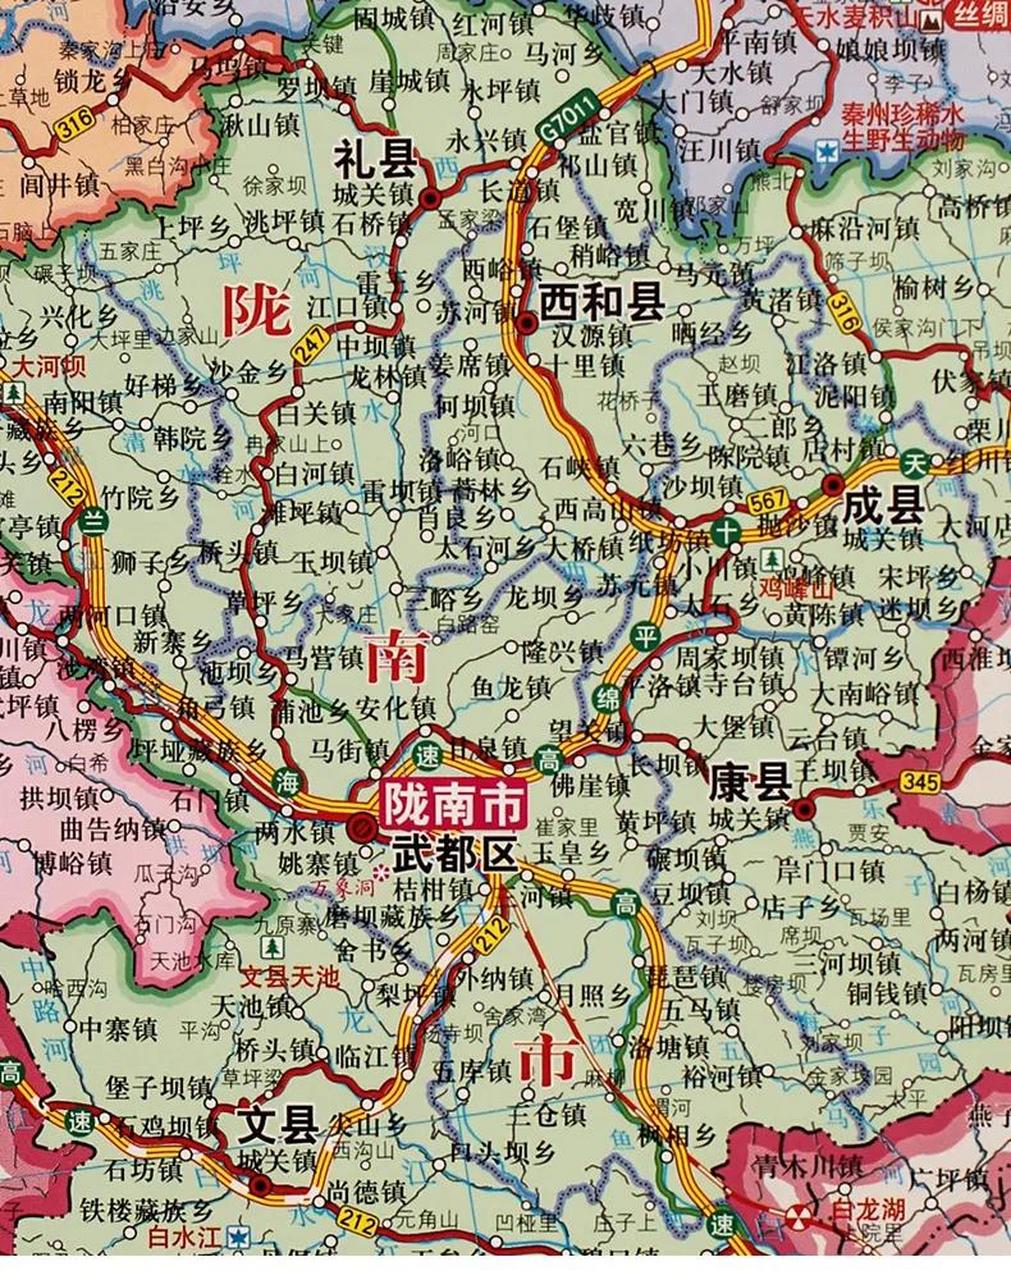 陇南市位于甘肃省南部山区,与四川,陕西相邻,这里更像南方城市,山上树